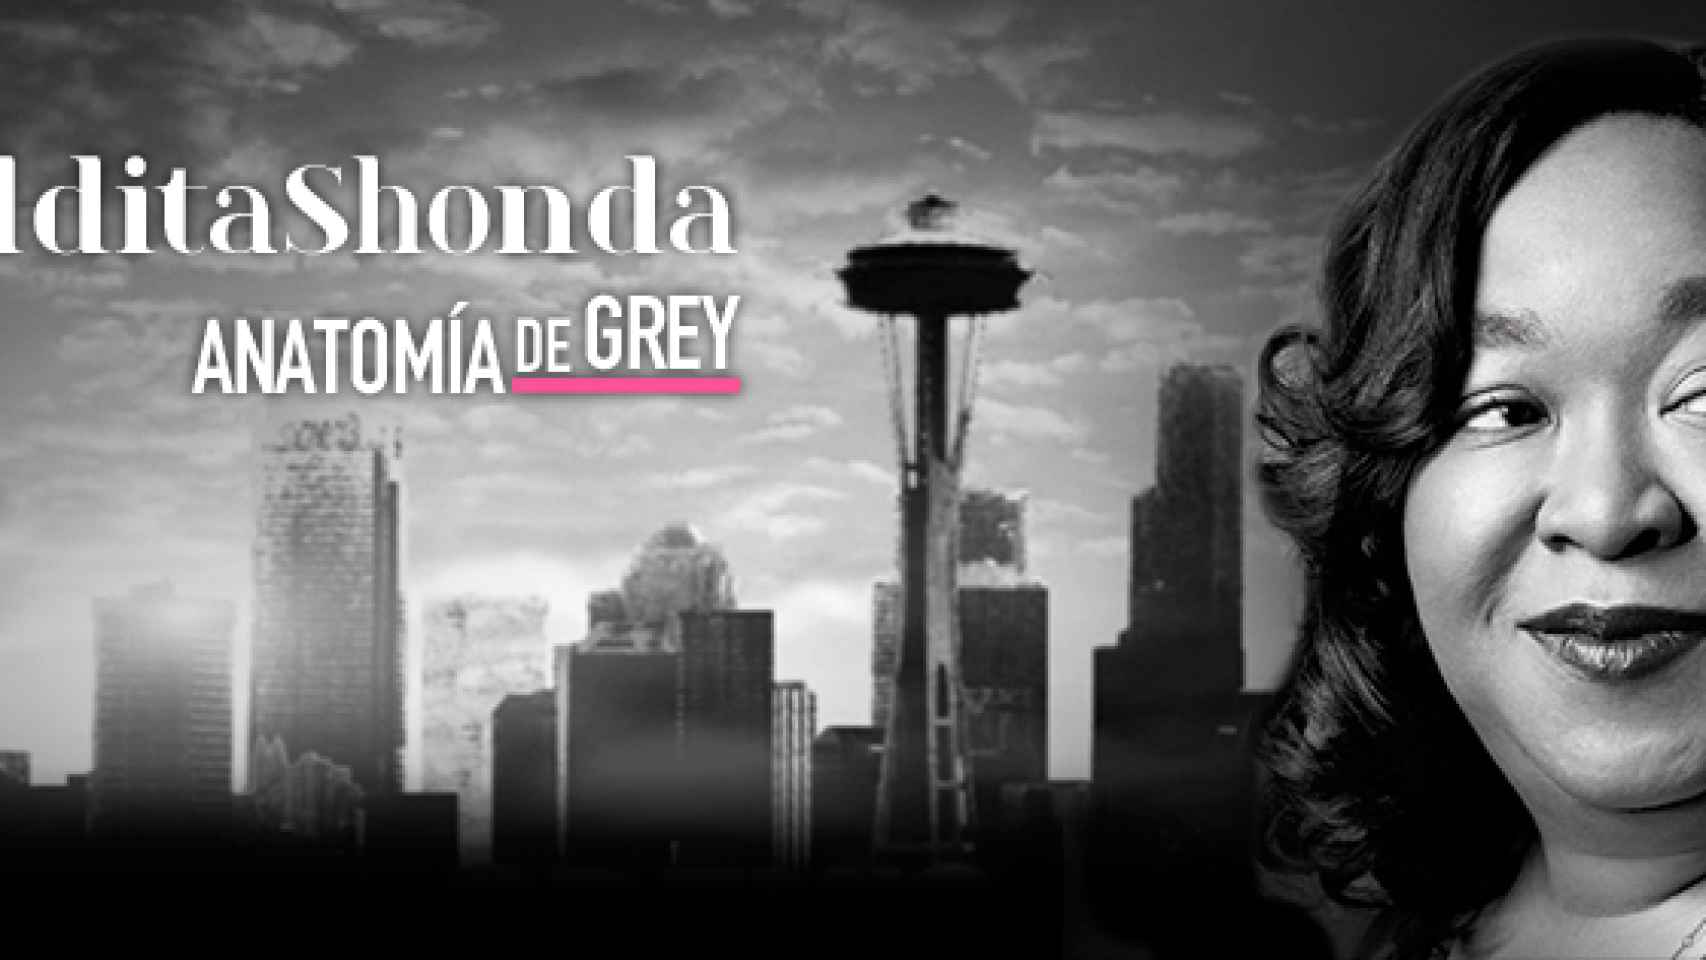 Divinity recuerda las trágicas muertes de 'Anatomía de Grey' en 'Maldita Shonda'